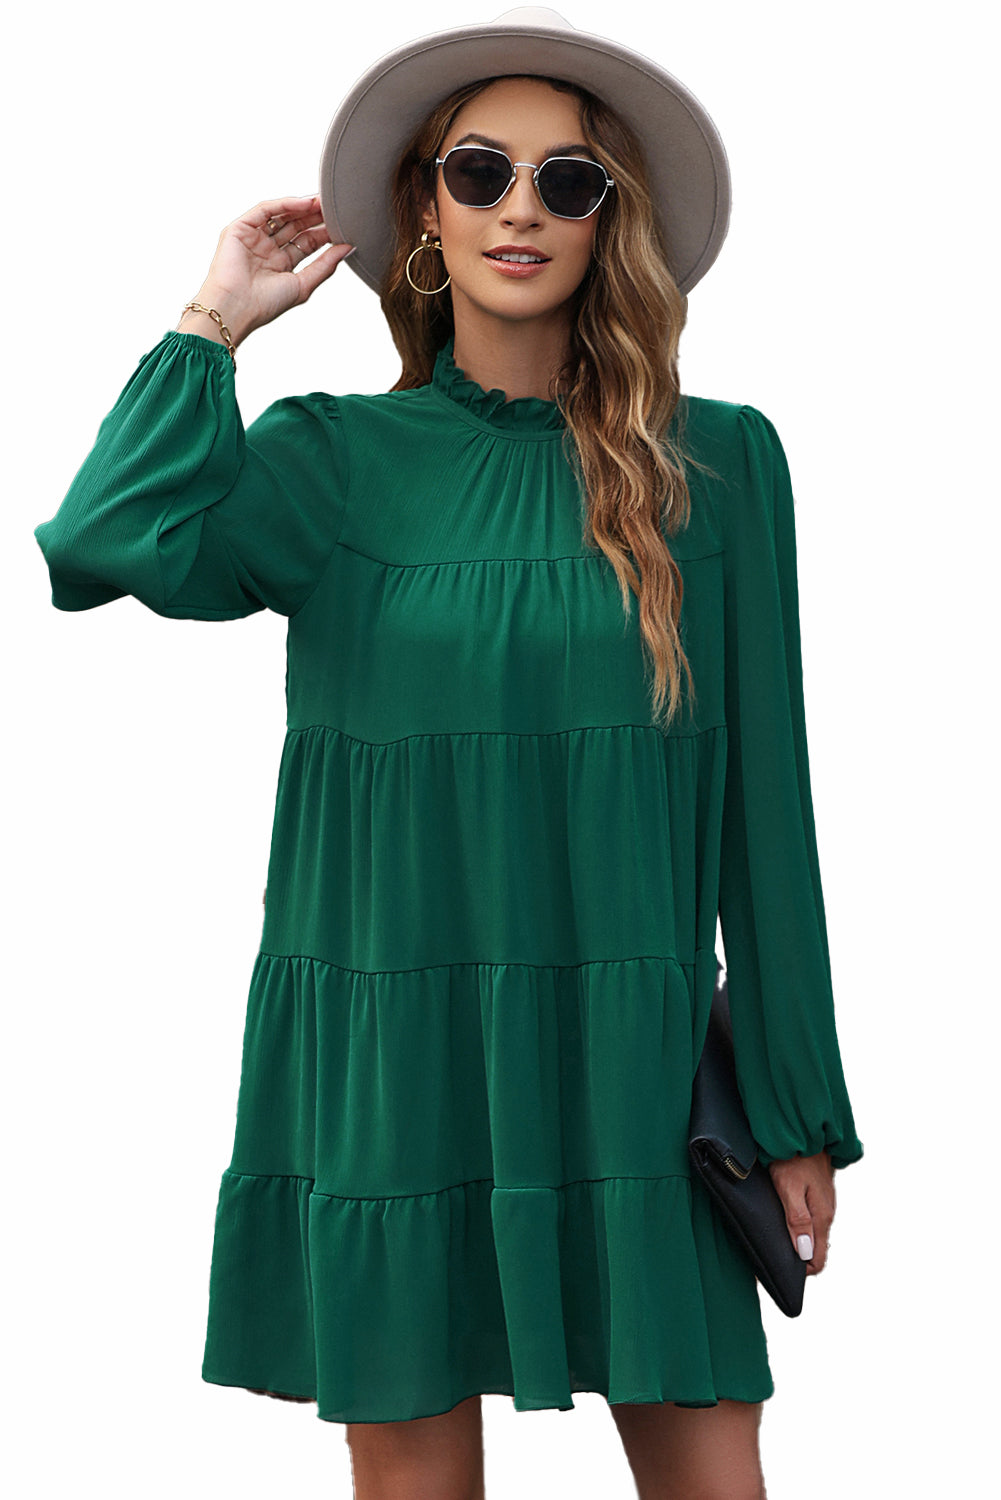 Grünes, gestuftes Kleid mit Puffärmeln, Stehkragen und Knoten am Rücken